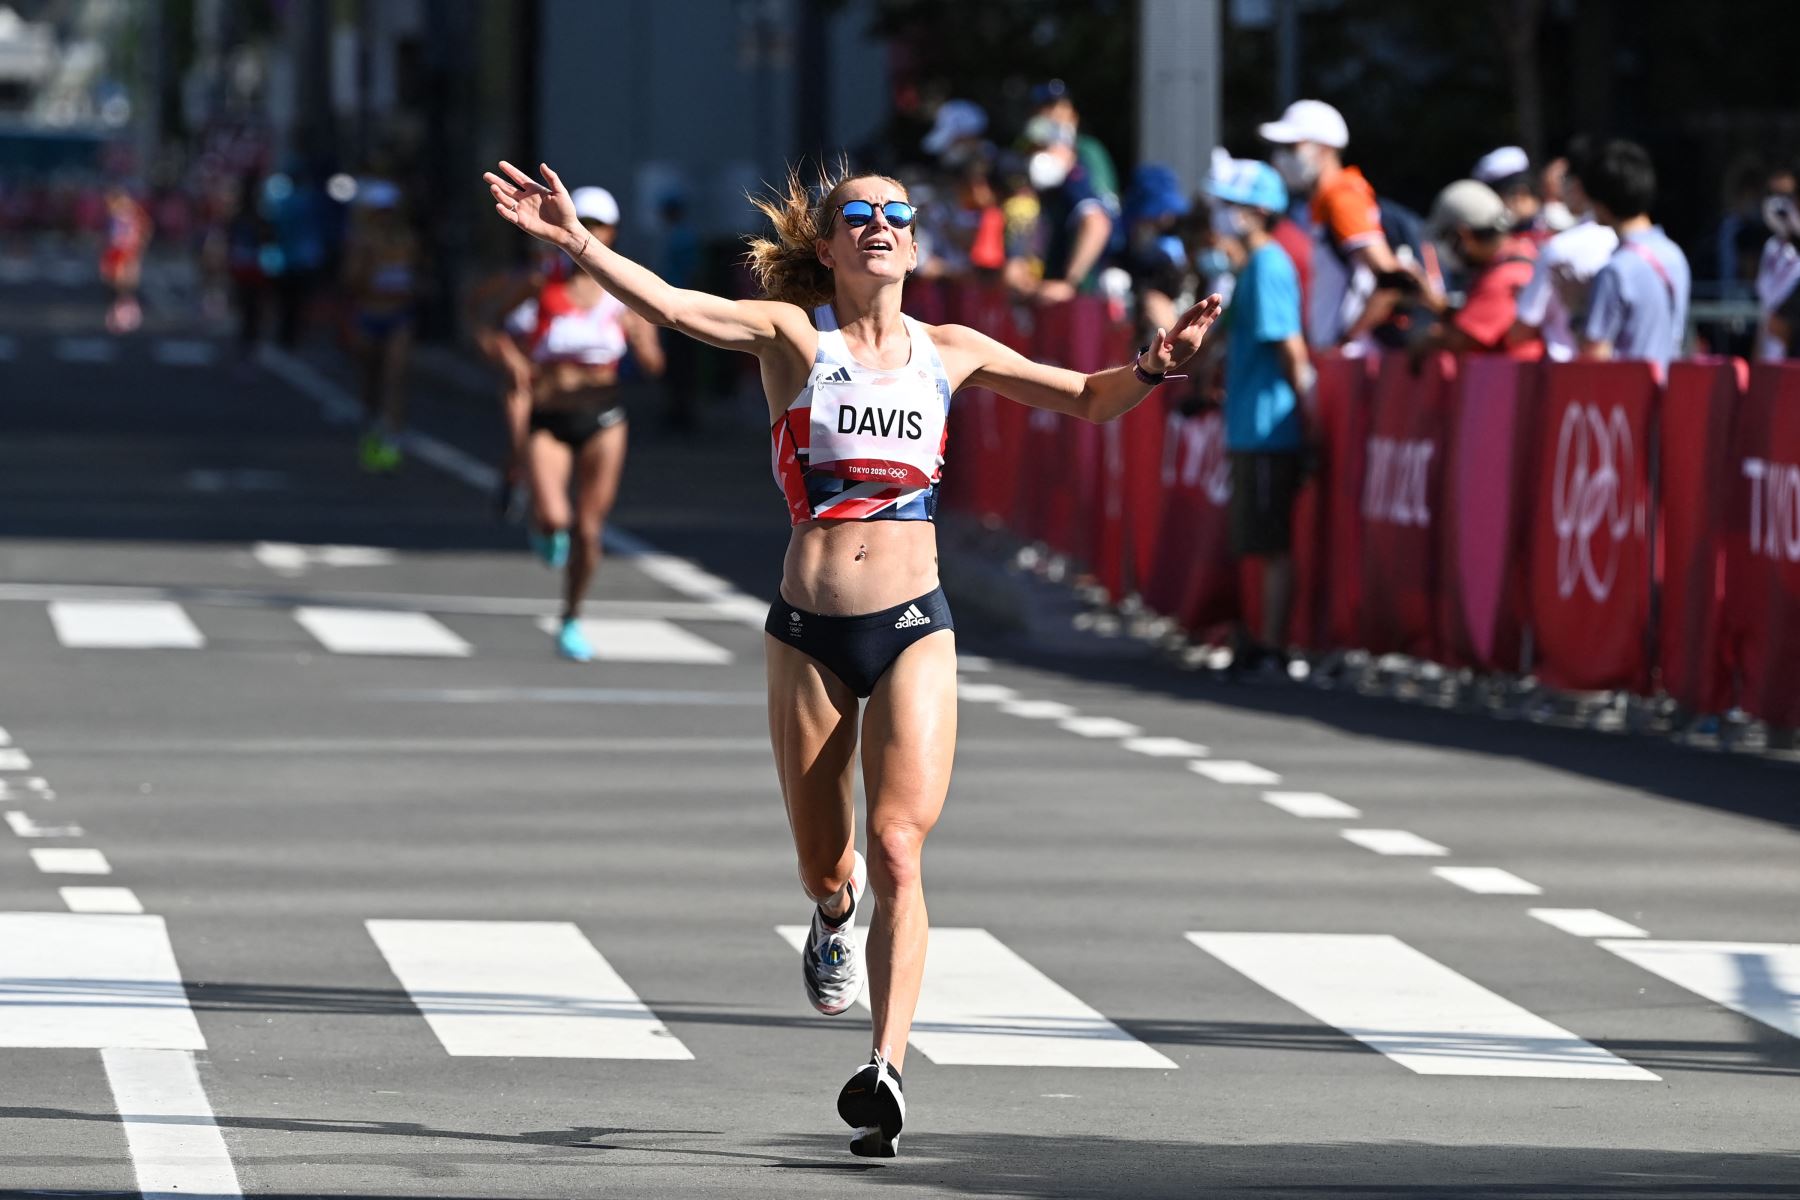 La estadounidense Tara Davis cruza la línea de meta de la final del maratón femenino durante los Juegos Olímpicos de Tokio 2020.
Foto: AFP